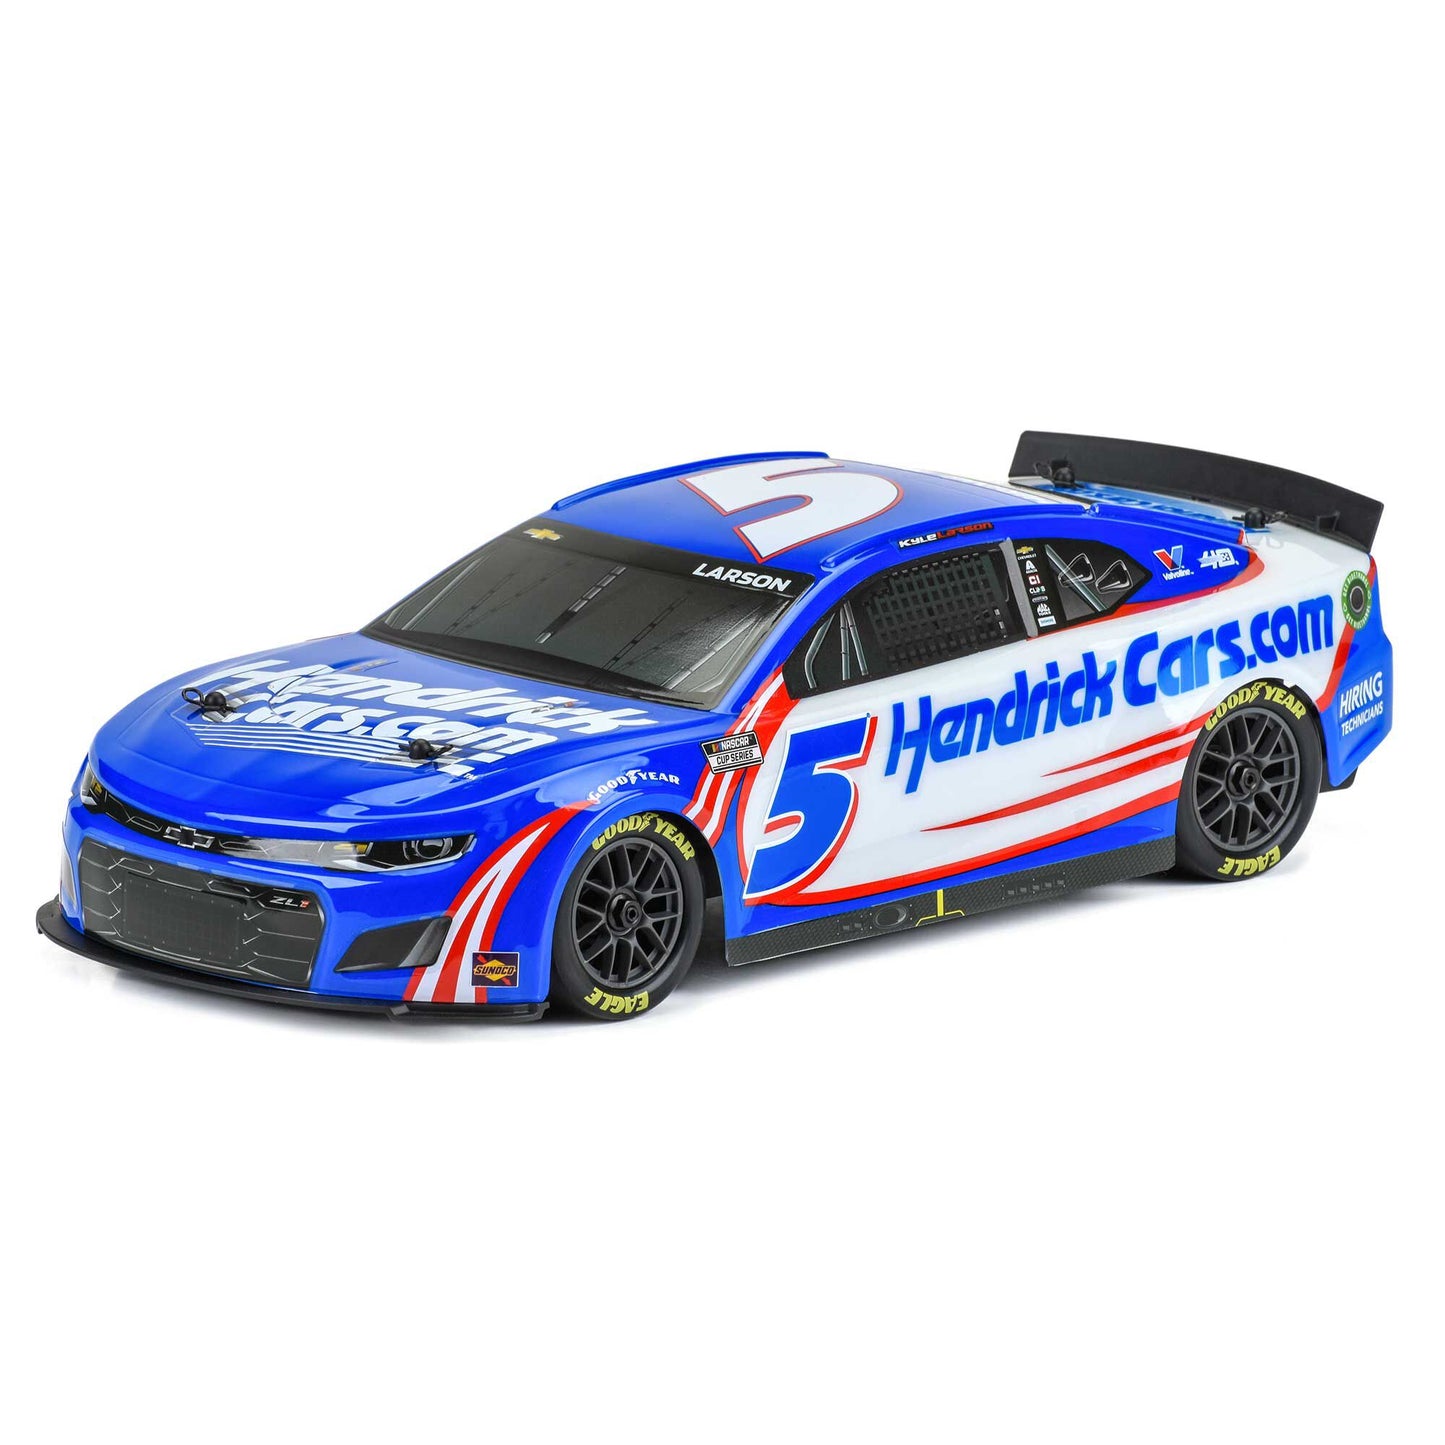 1/12 NASCAR RC Race Car